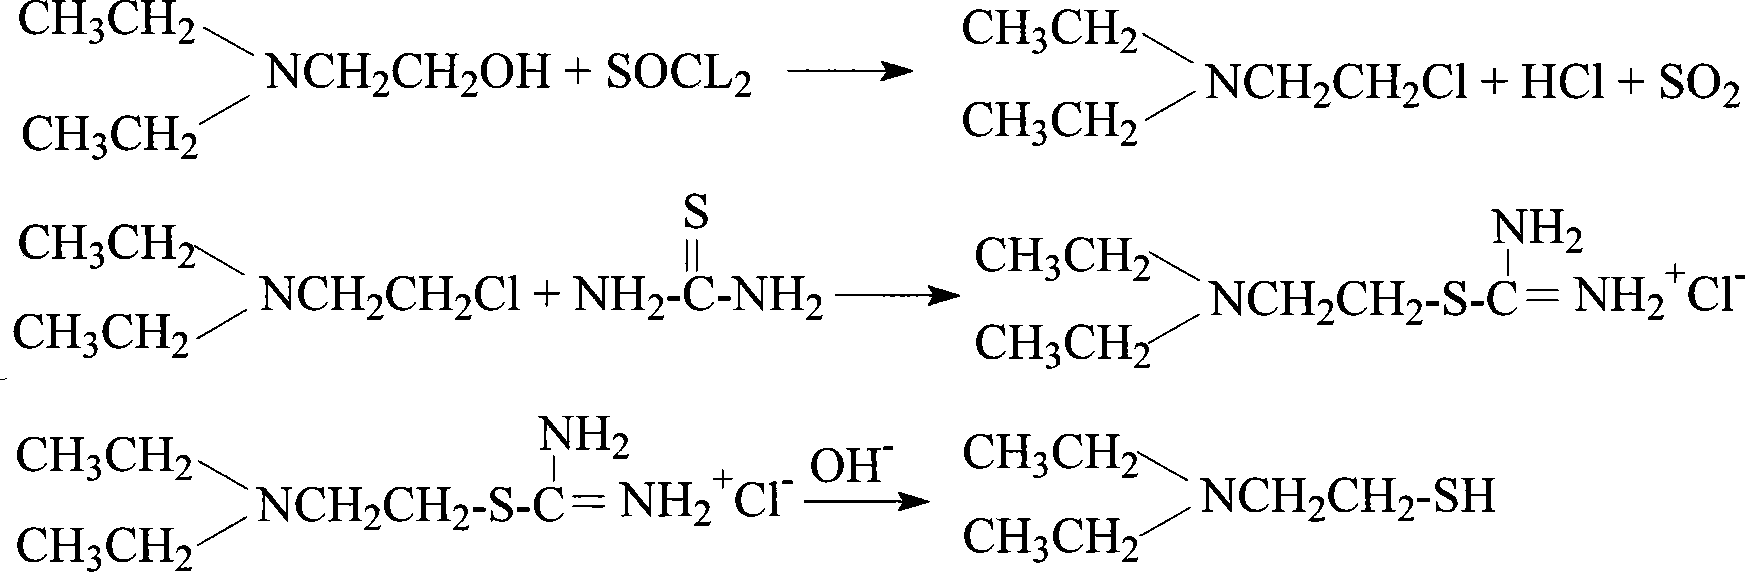 Method for preparing diethylamino ethanethiol